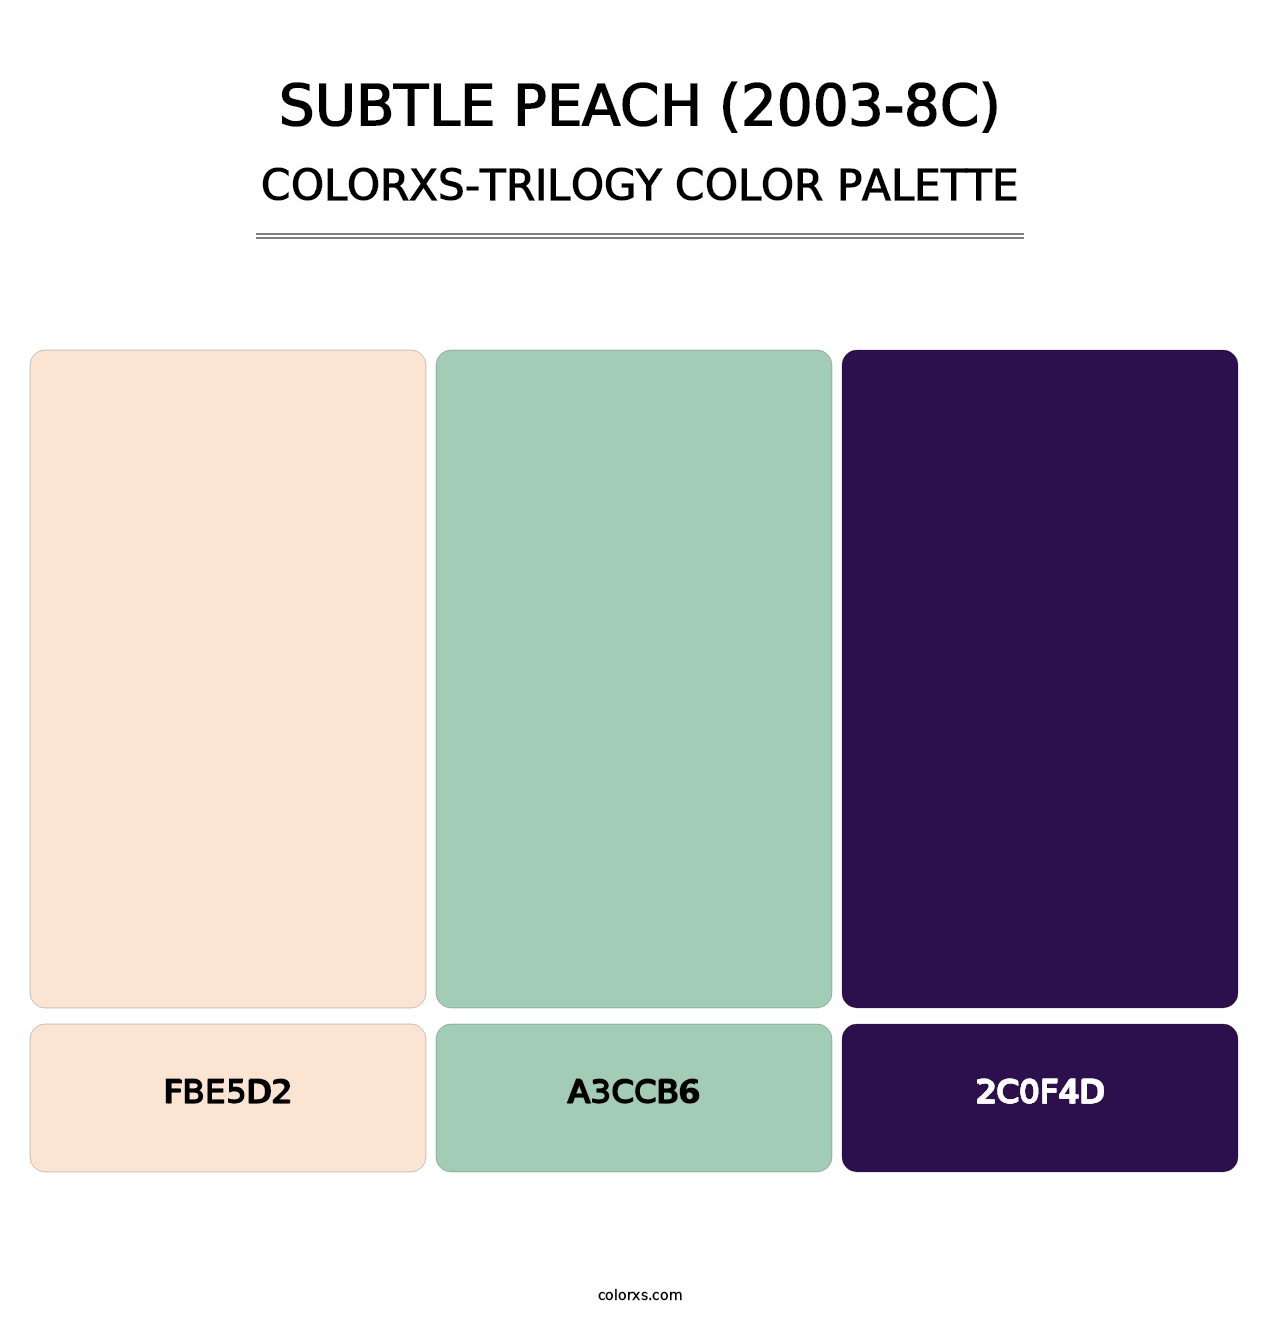 Subtle Peach (2003-8C) - Colorxs Trilogy Palette